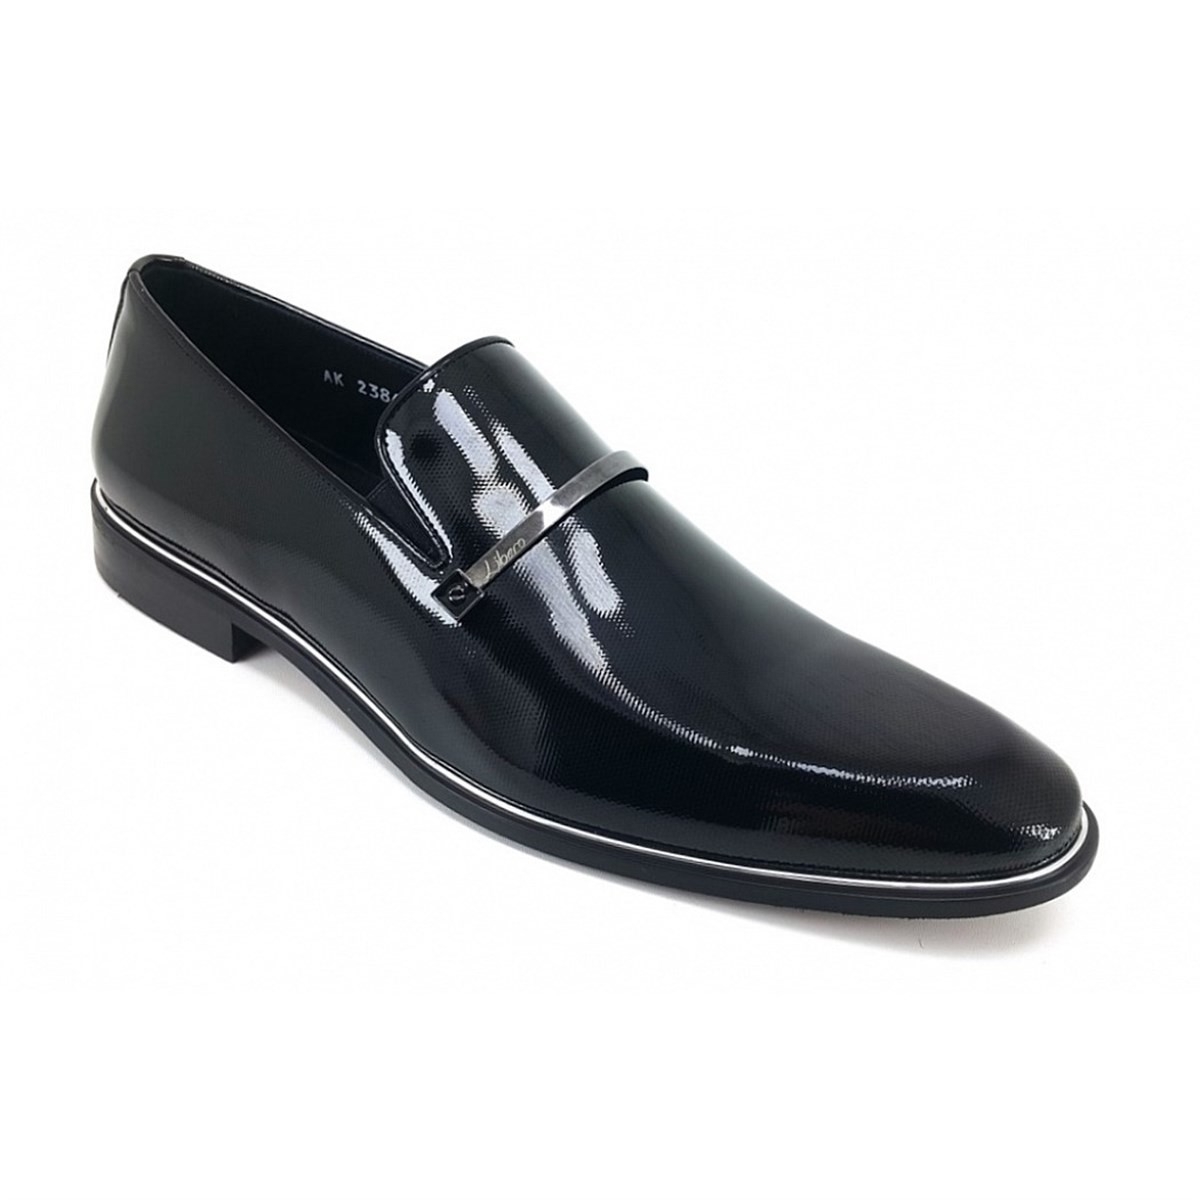 Flo 2384 Erkek Klasik Ayakkabı-Siyah Rugan. 1